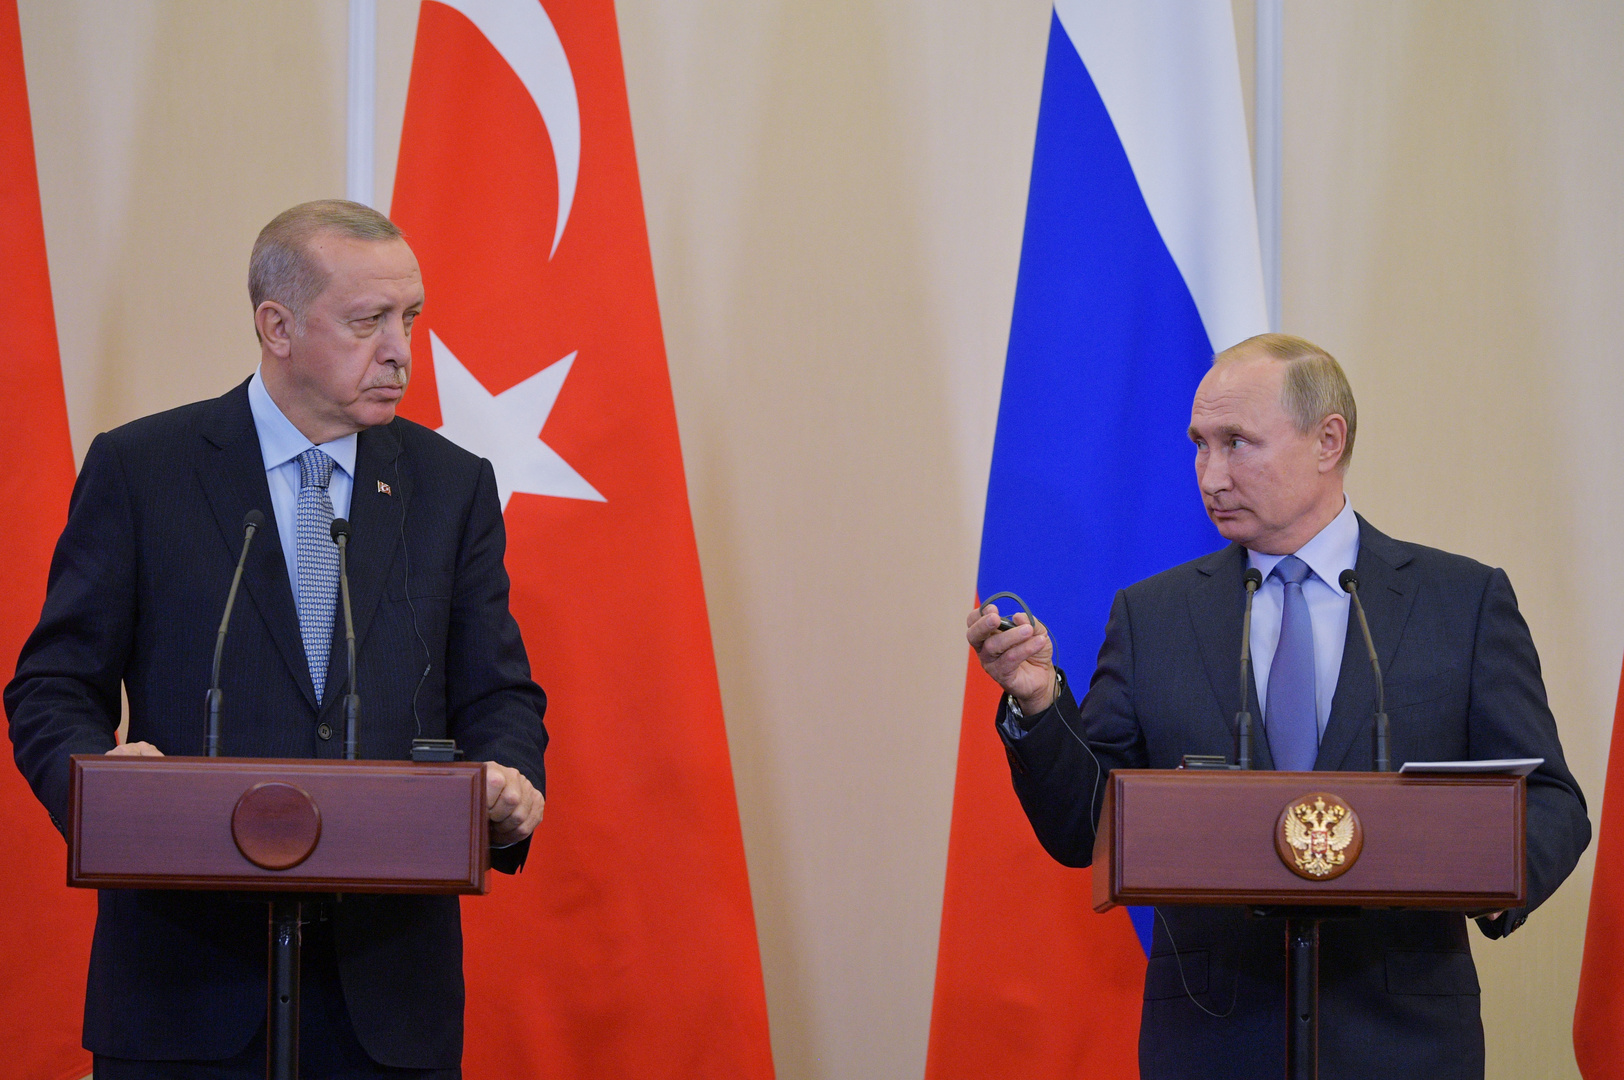 الكرملين: بوتين وأردوغان يبحثان التصعيد الإسرائيلي-الفلسطيني ويحثان كافة الأطراف على خفض التوتر